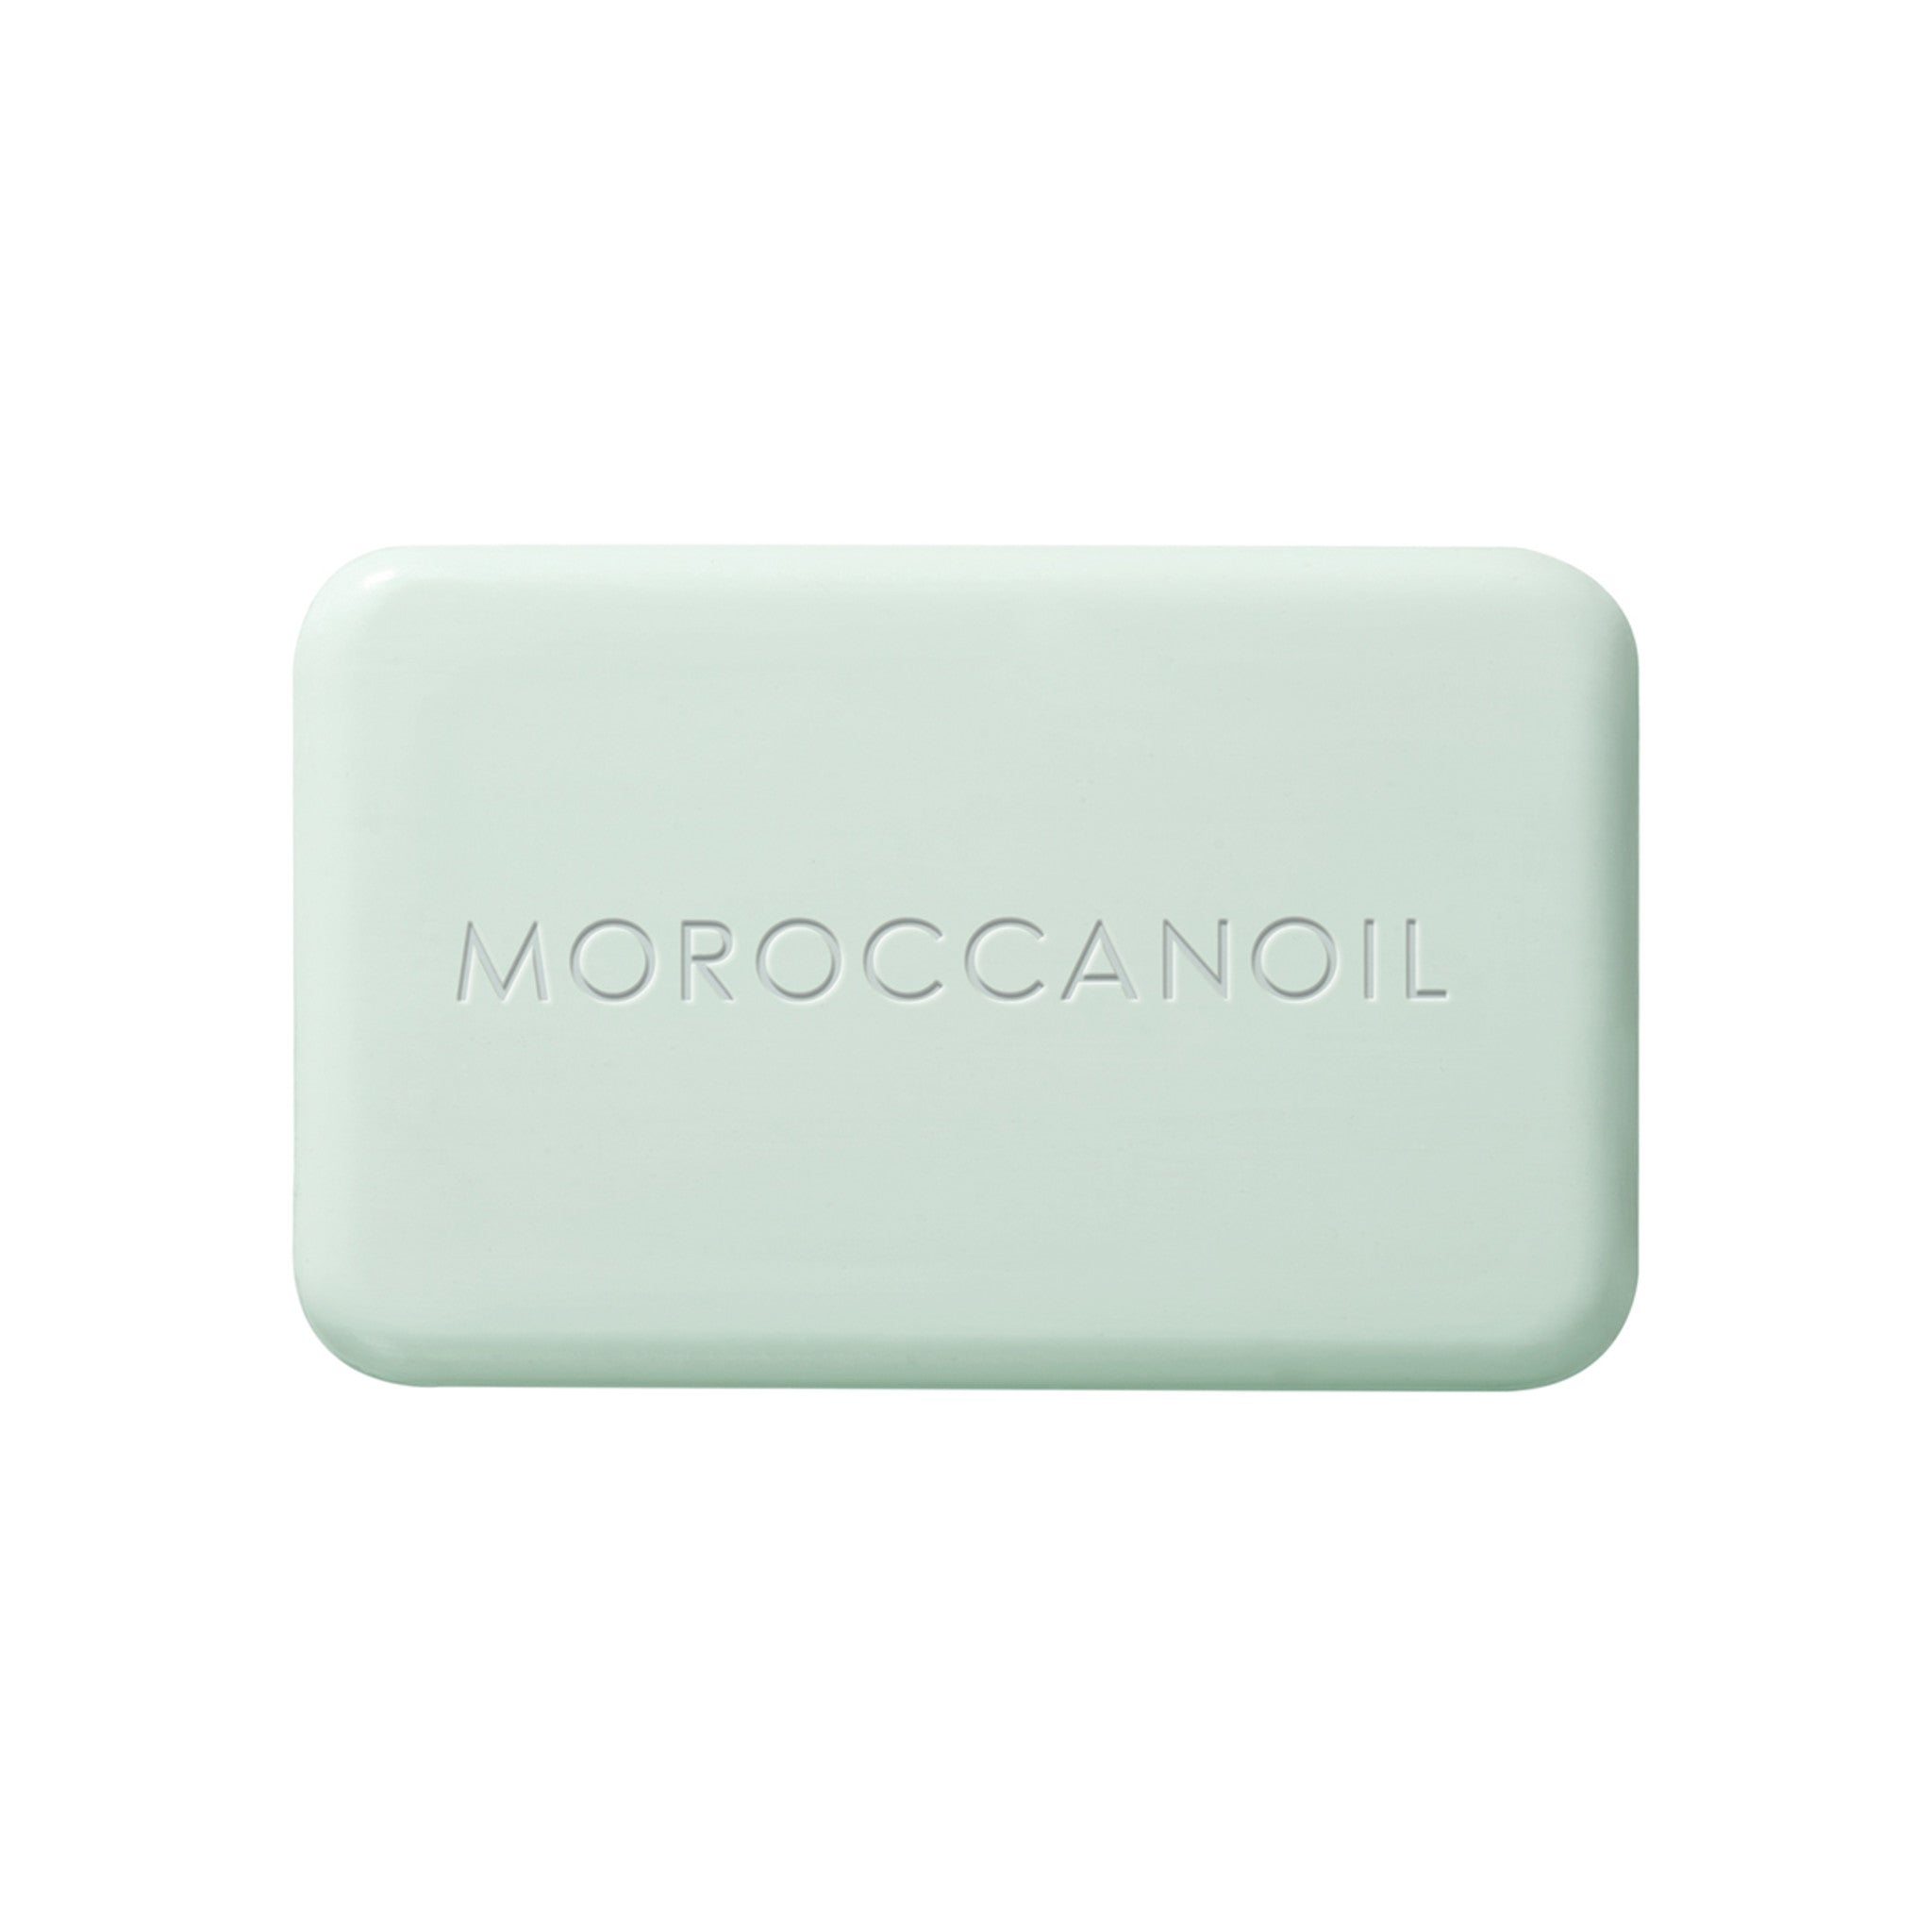 Moroccanoil Soap Fragrance Originale main image.